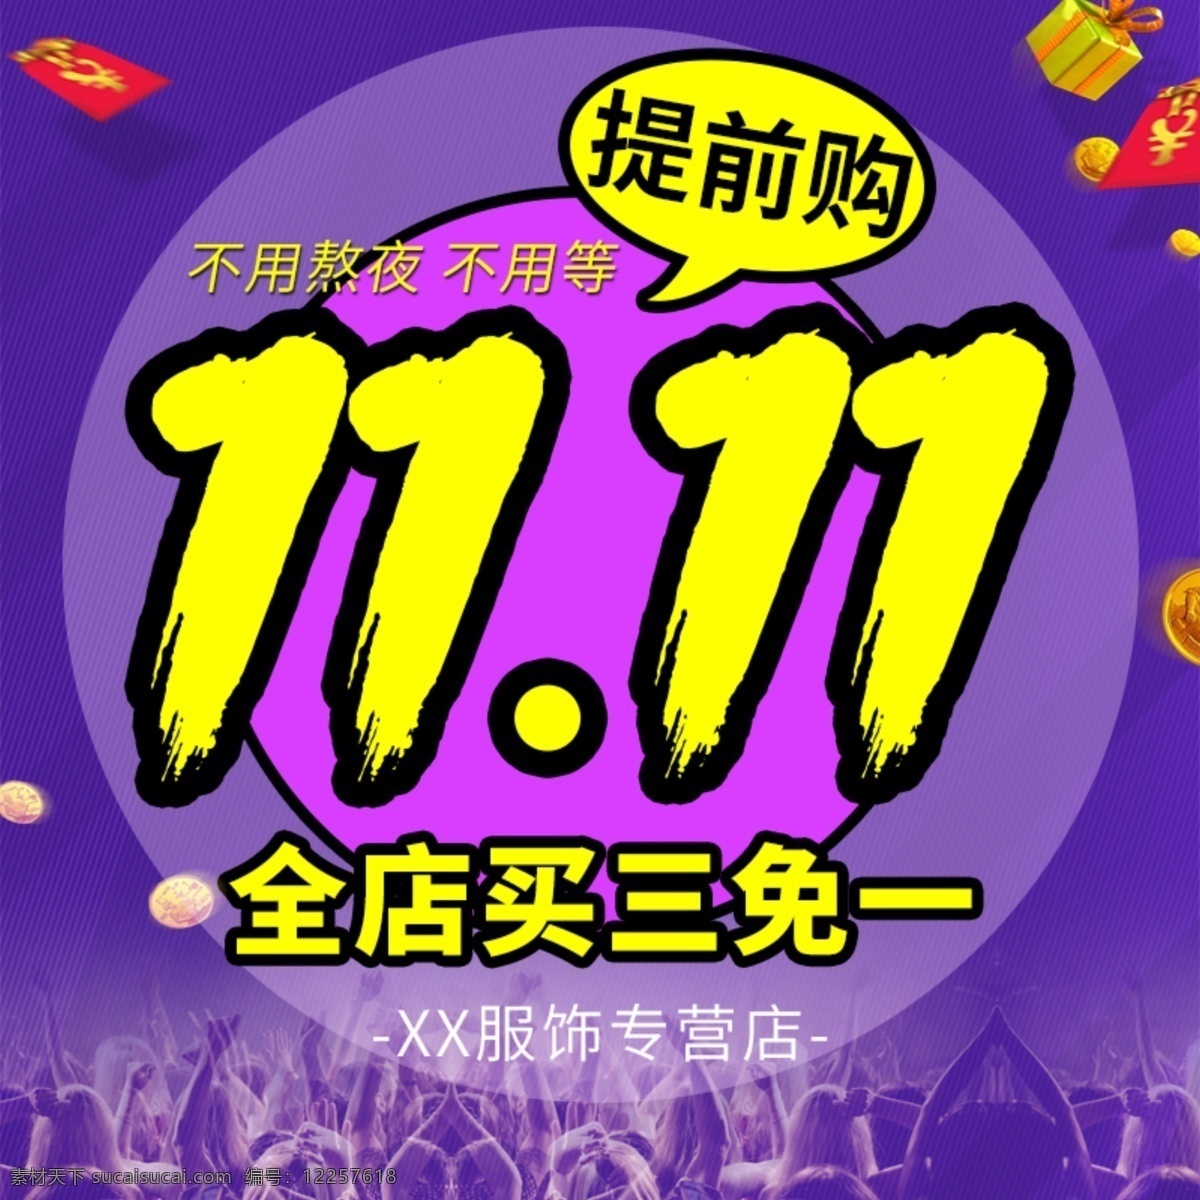 双11活动 11.11 活动图 京东 酷炫 紫色 双11 提前 购 活动 提前购